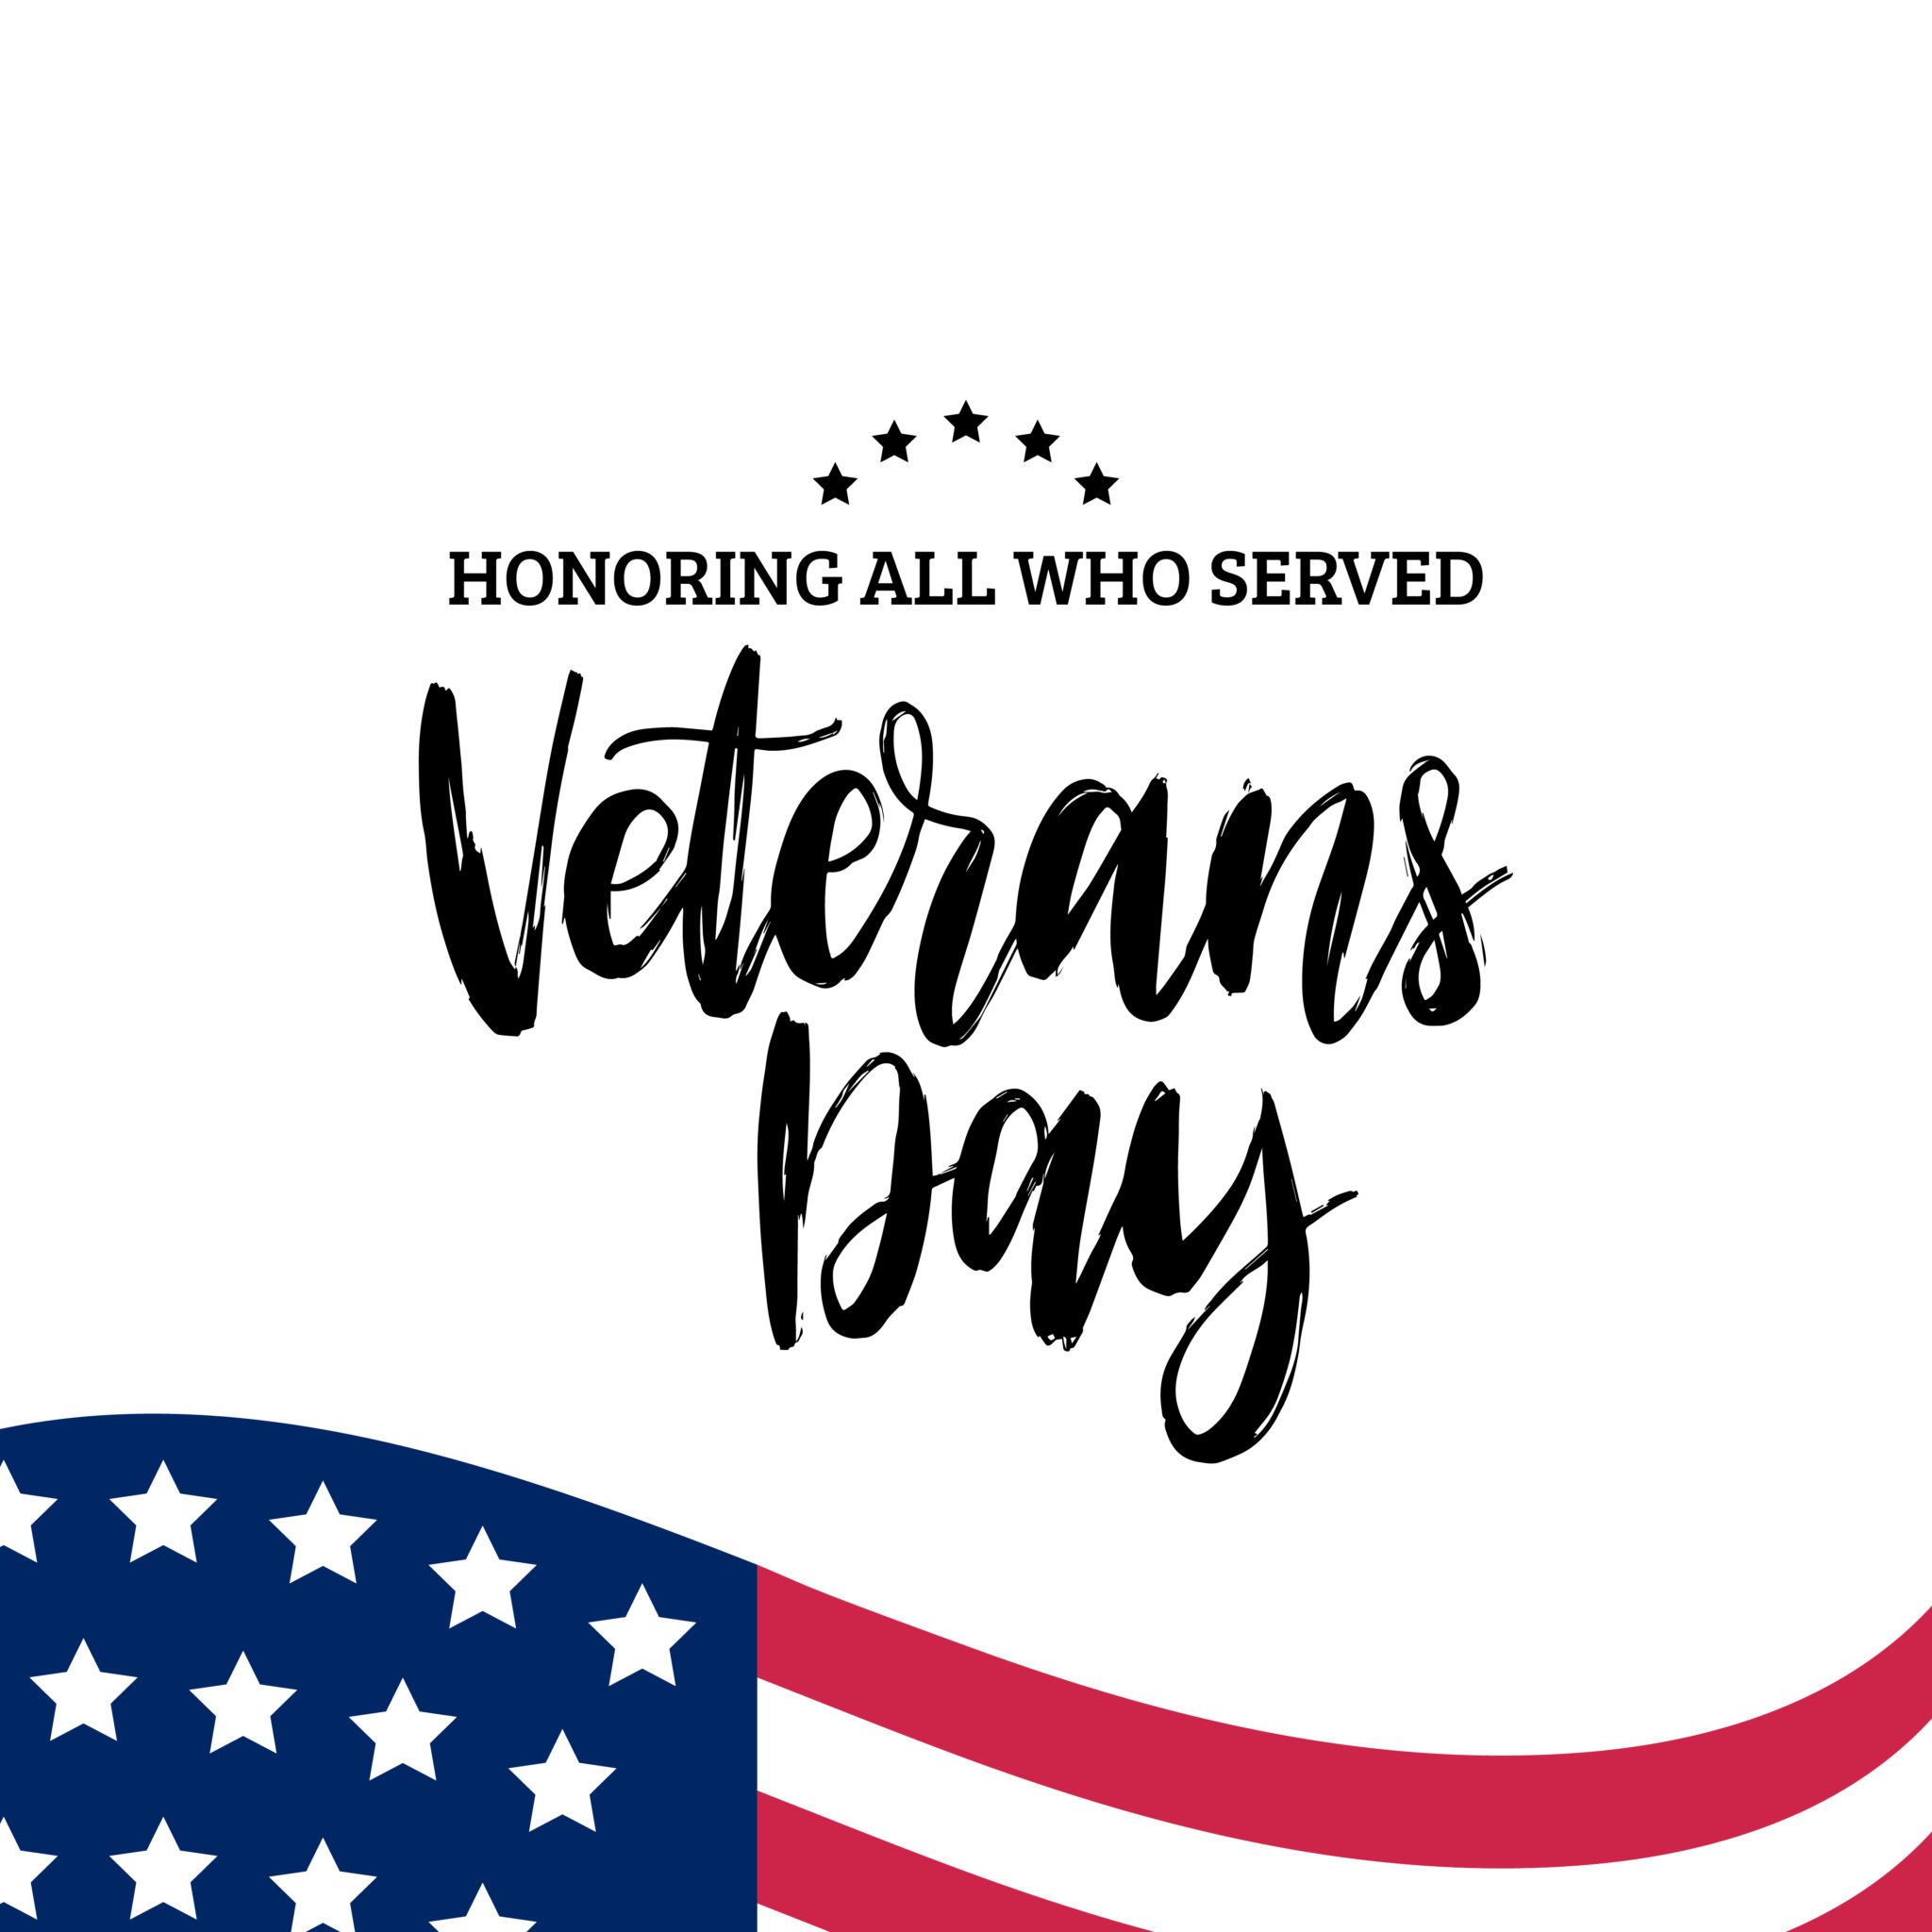 Happy Veterans Day 2019